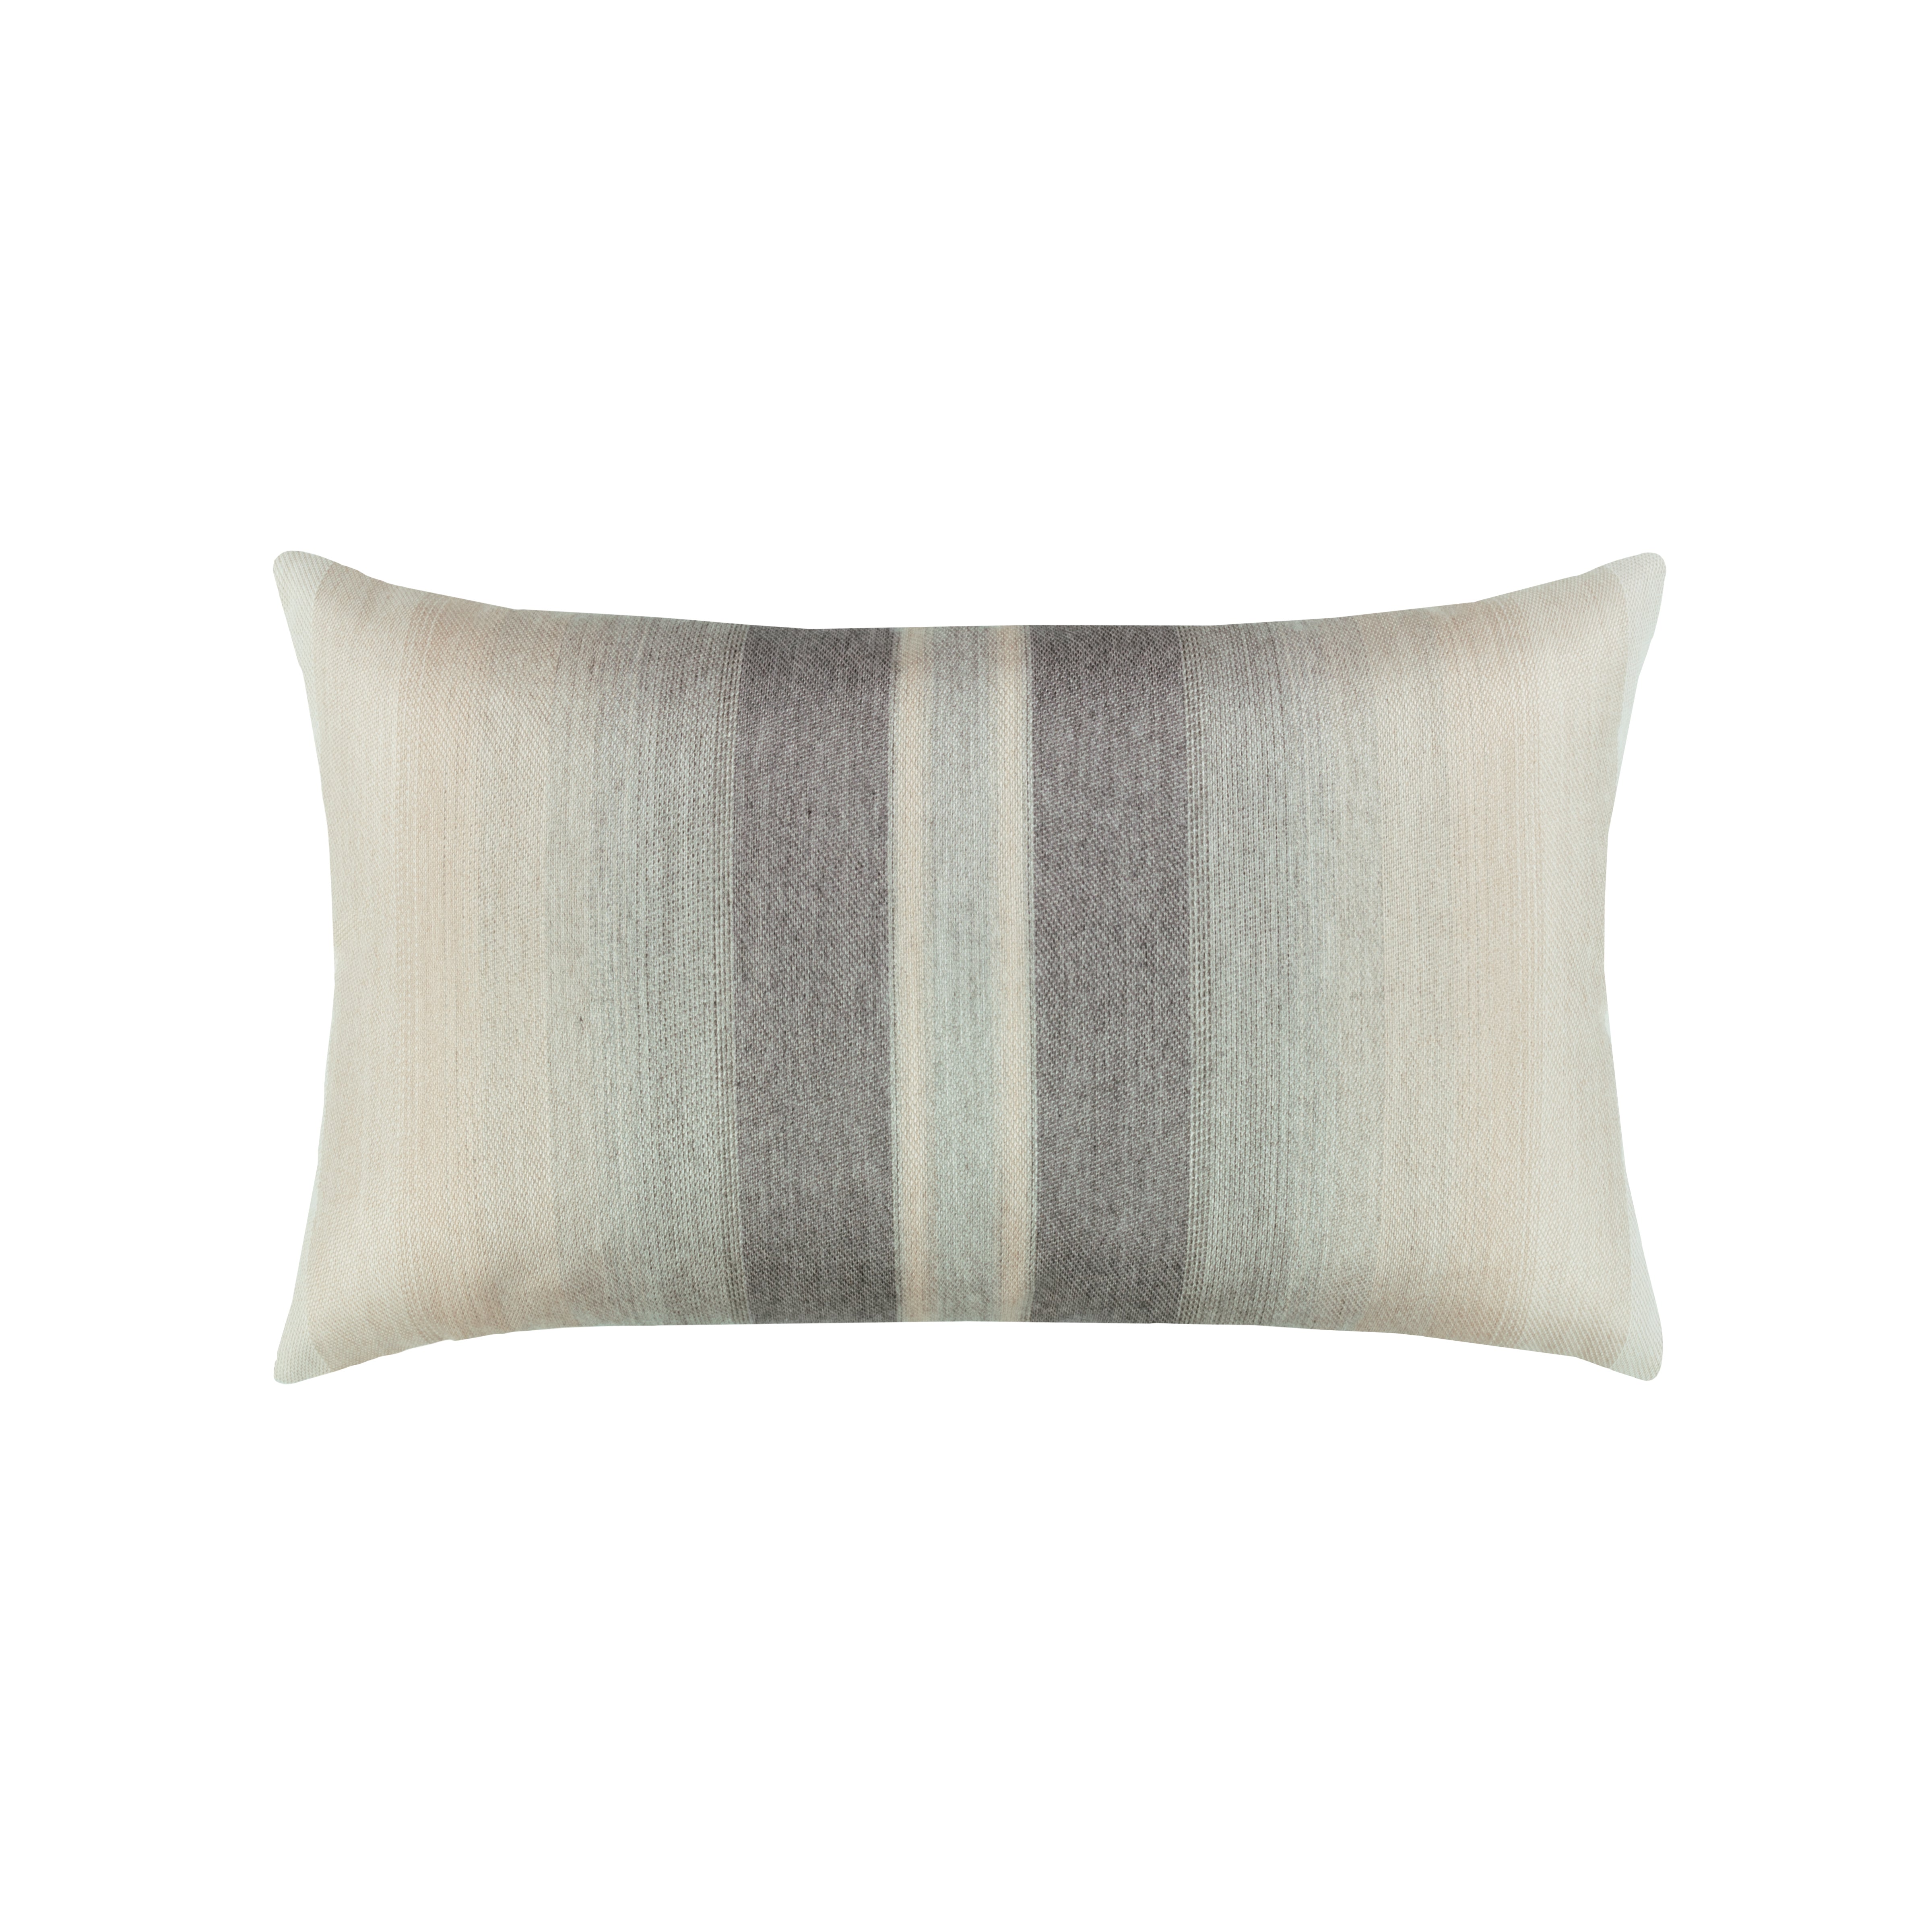 Elaine Smith 12" x 20" Lumbar Outdoor Pillow - Ombre Grigio - Polyester Fiber Fill Throw Pillows 12031010